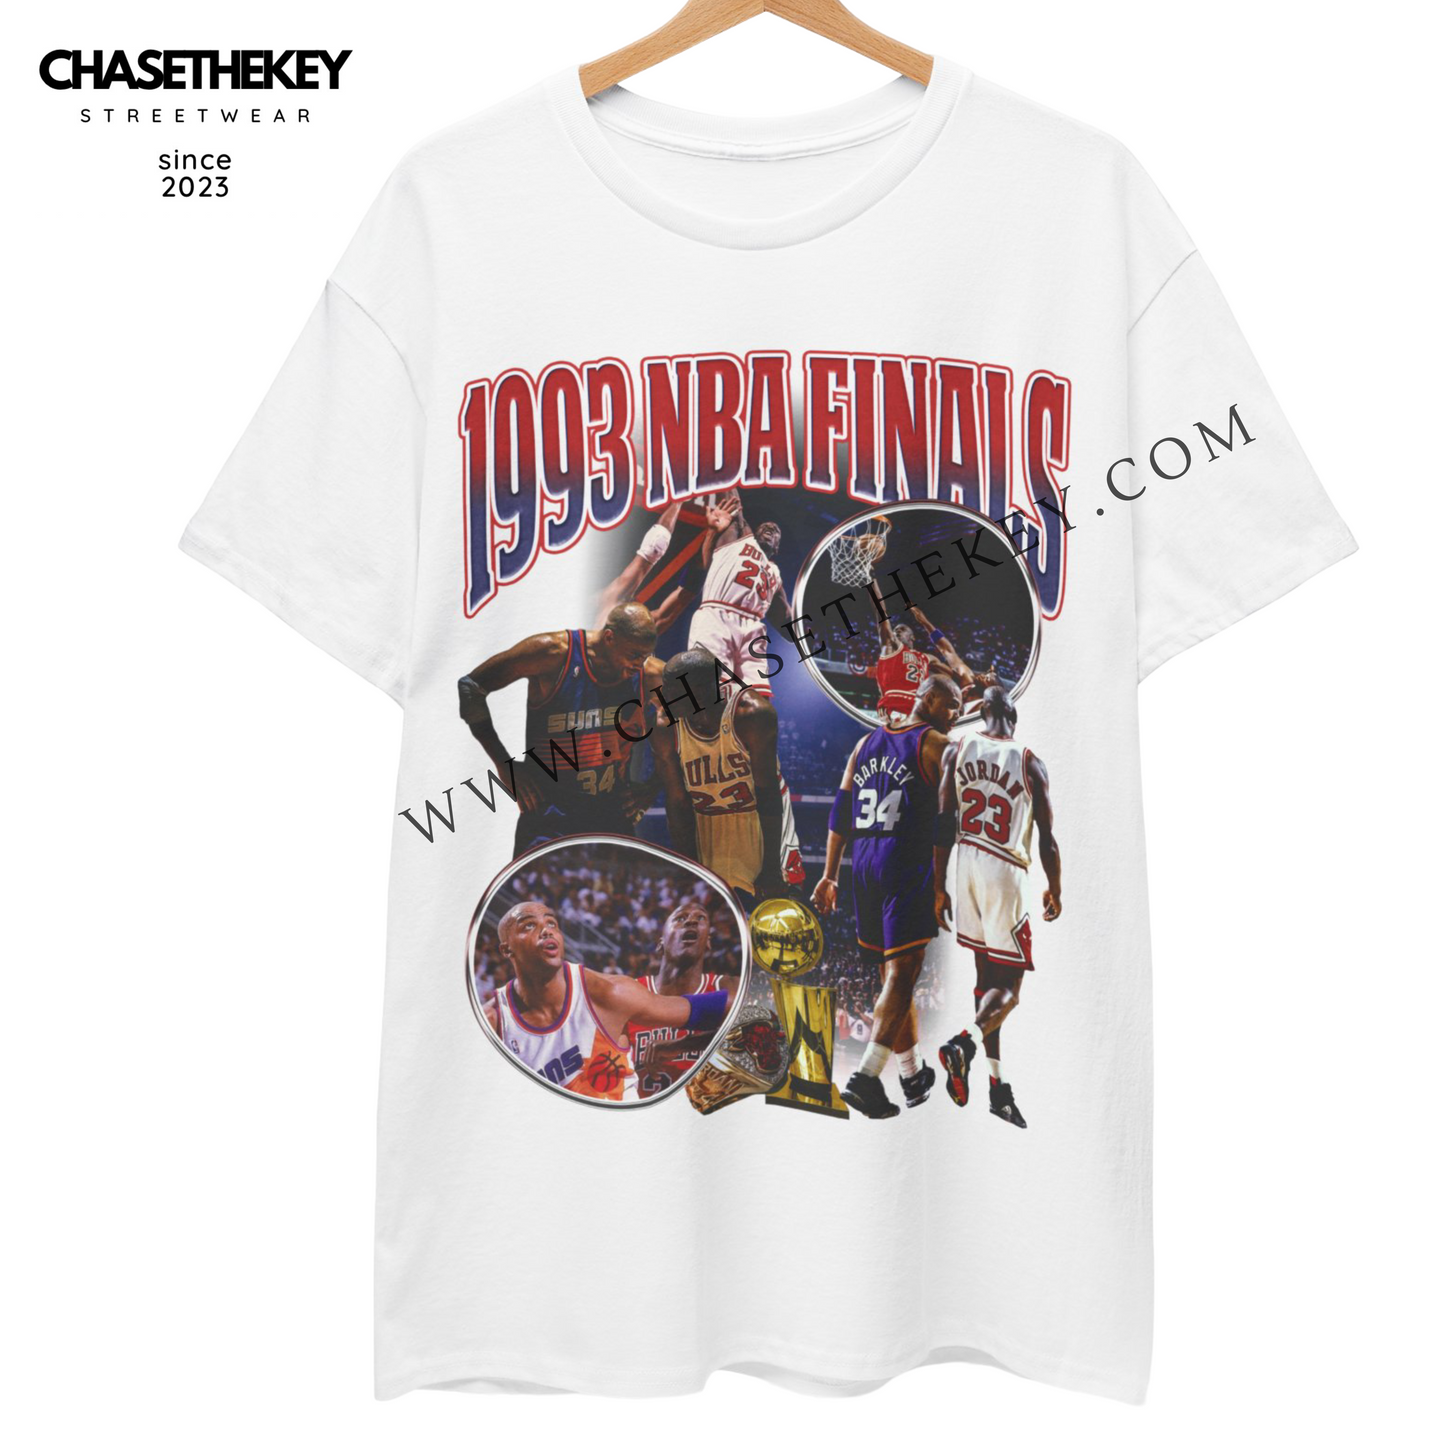 1993 NBA Finals T-Shirt